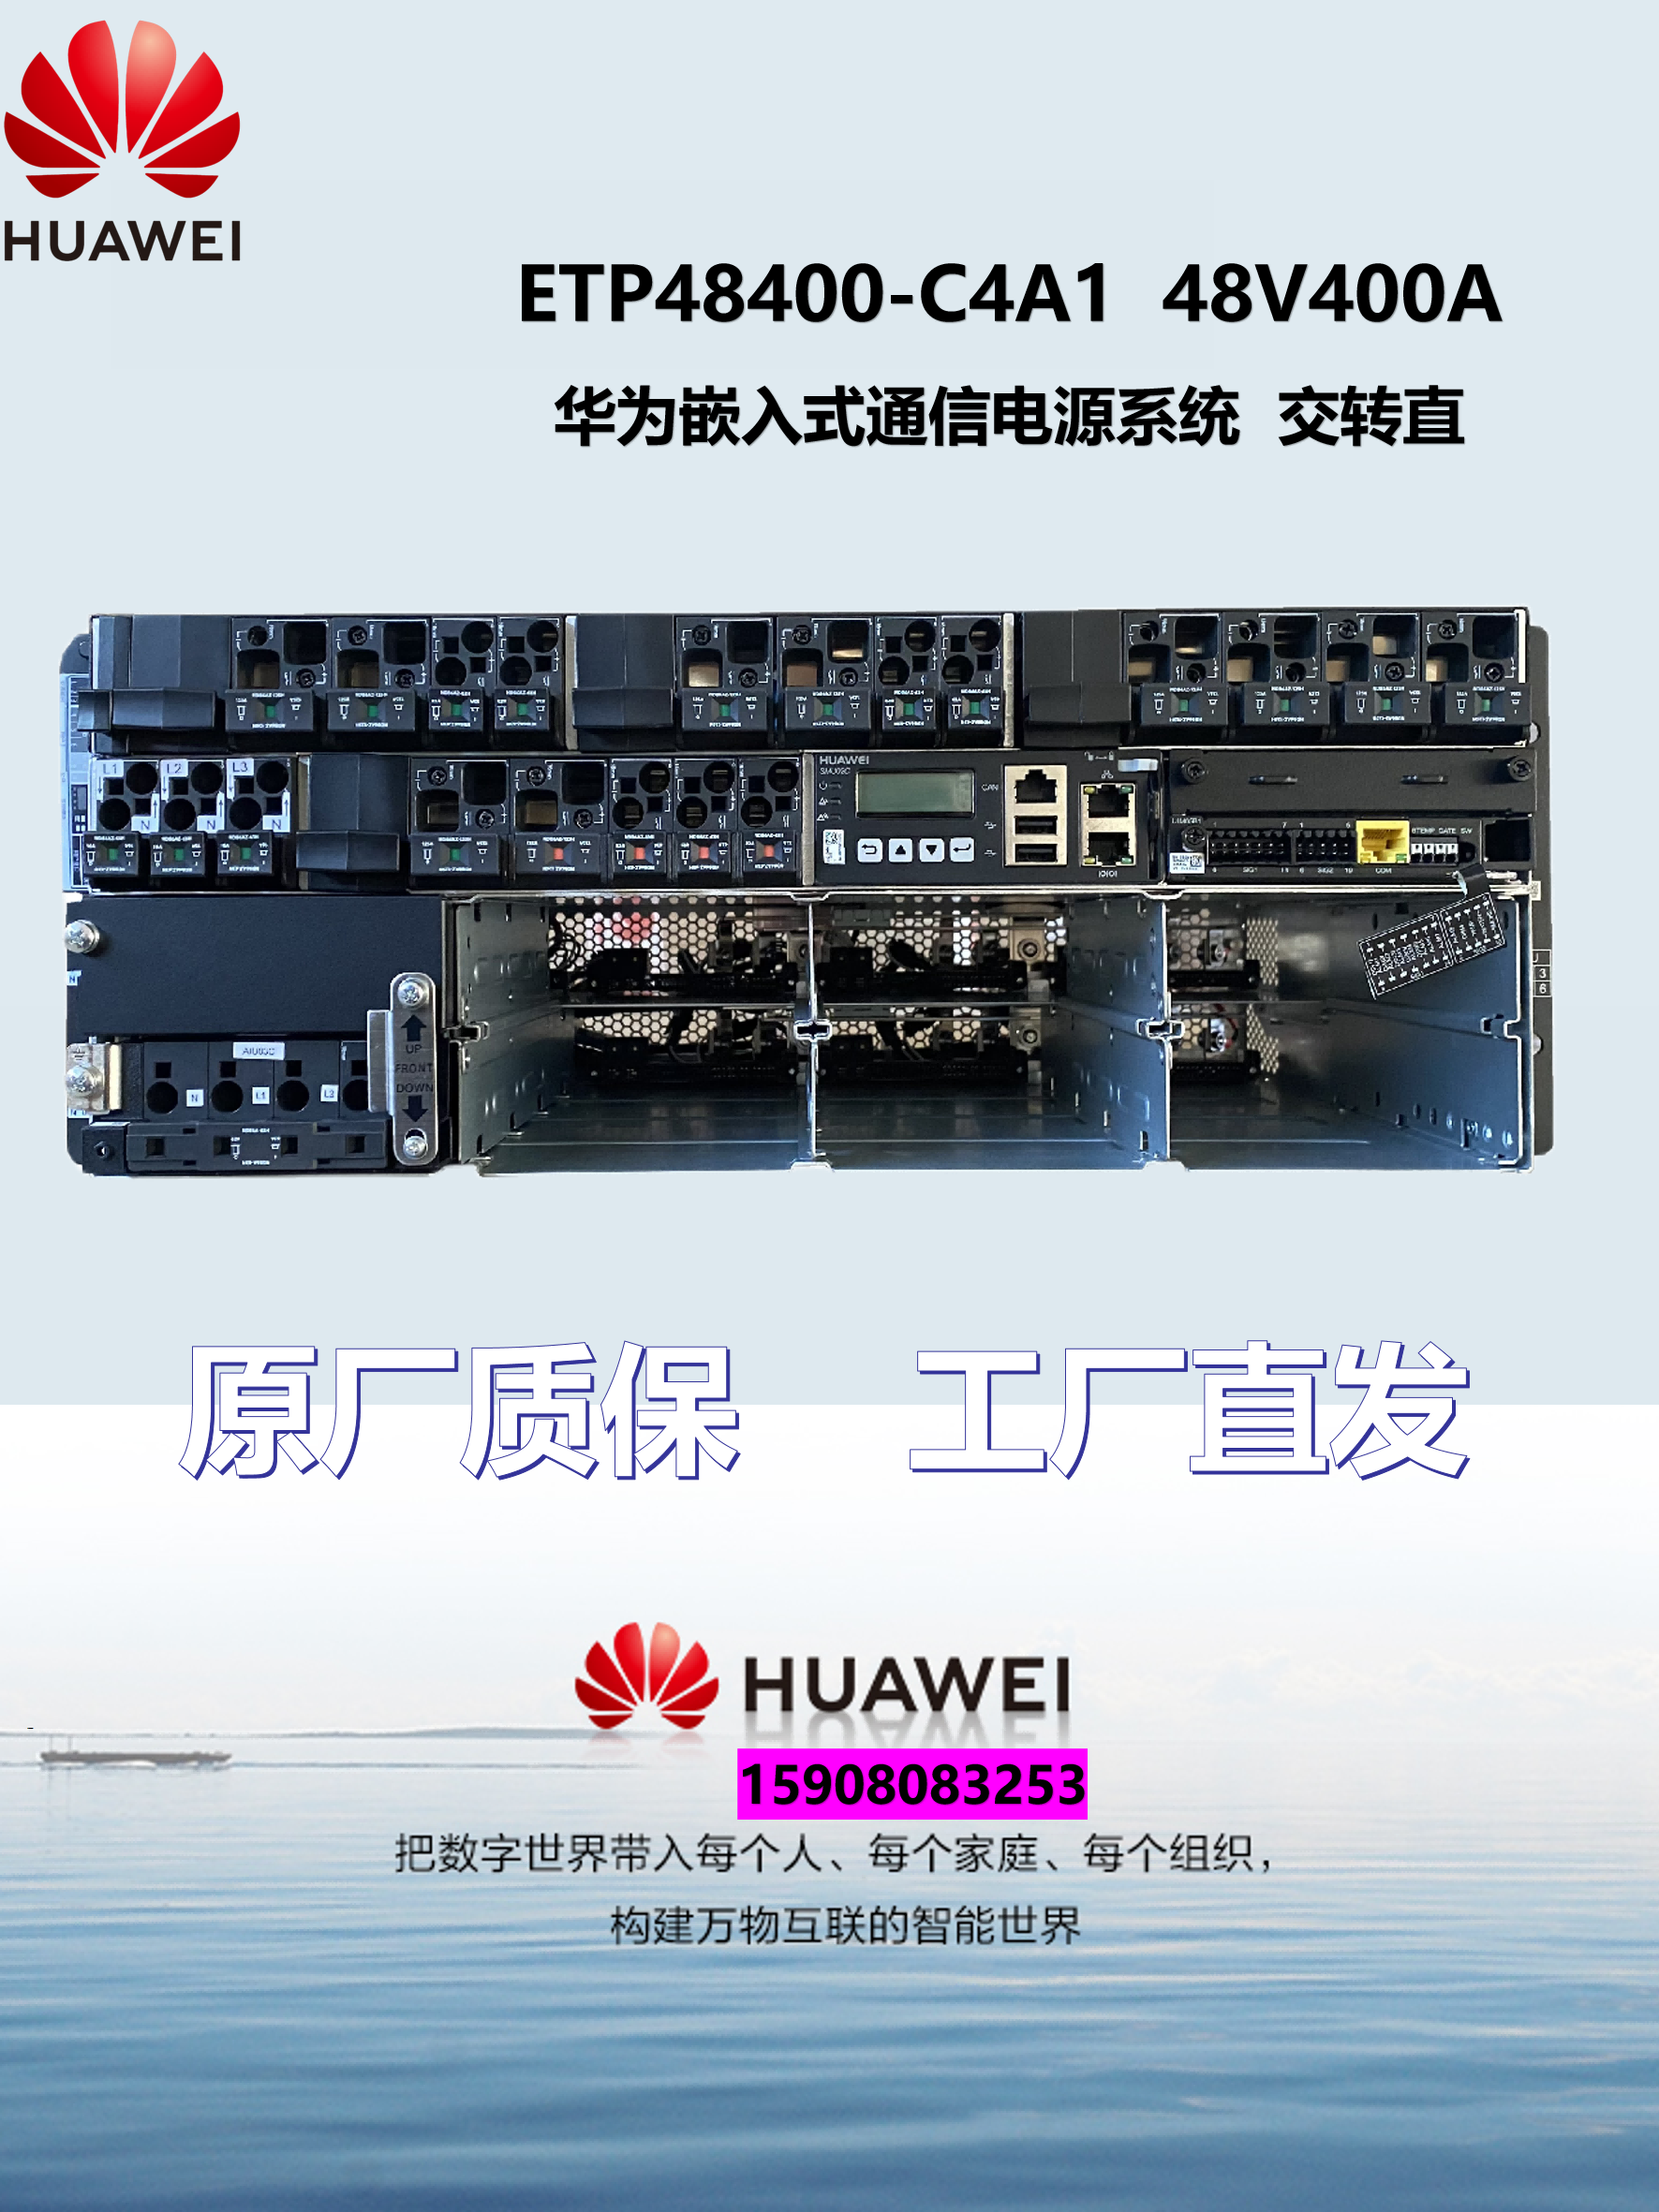 华为ETP48400-C4A1嵌入式开关电源48V400A高频通信电源系统5G基站